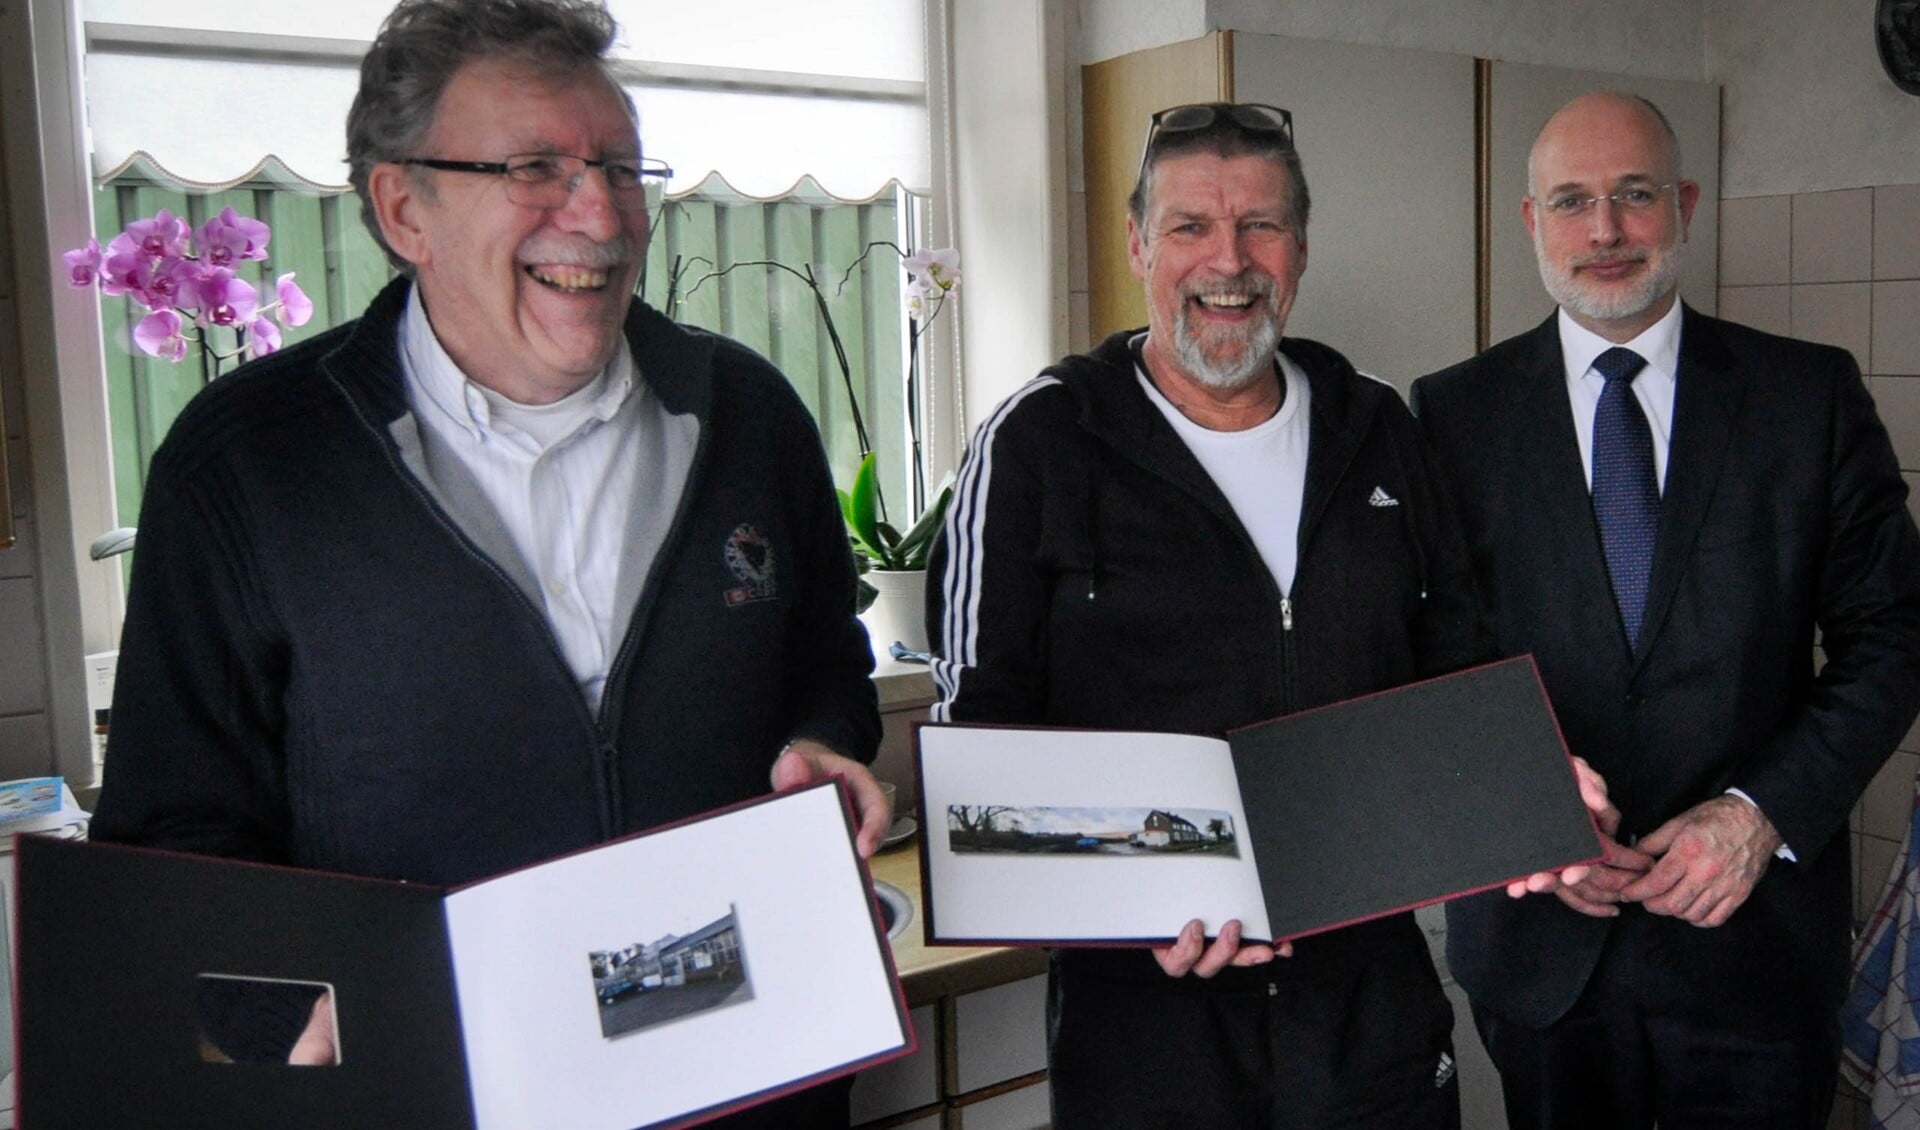 De gebroeders Goeman met het fotoboek dat wethouder Frank Rozenberg overhandigde (foto: gemeente LDVB).